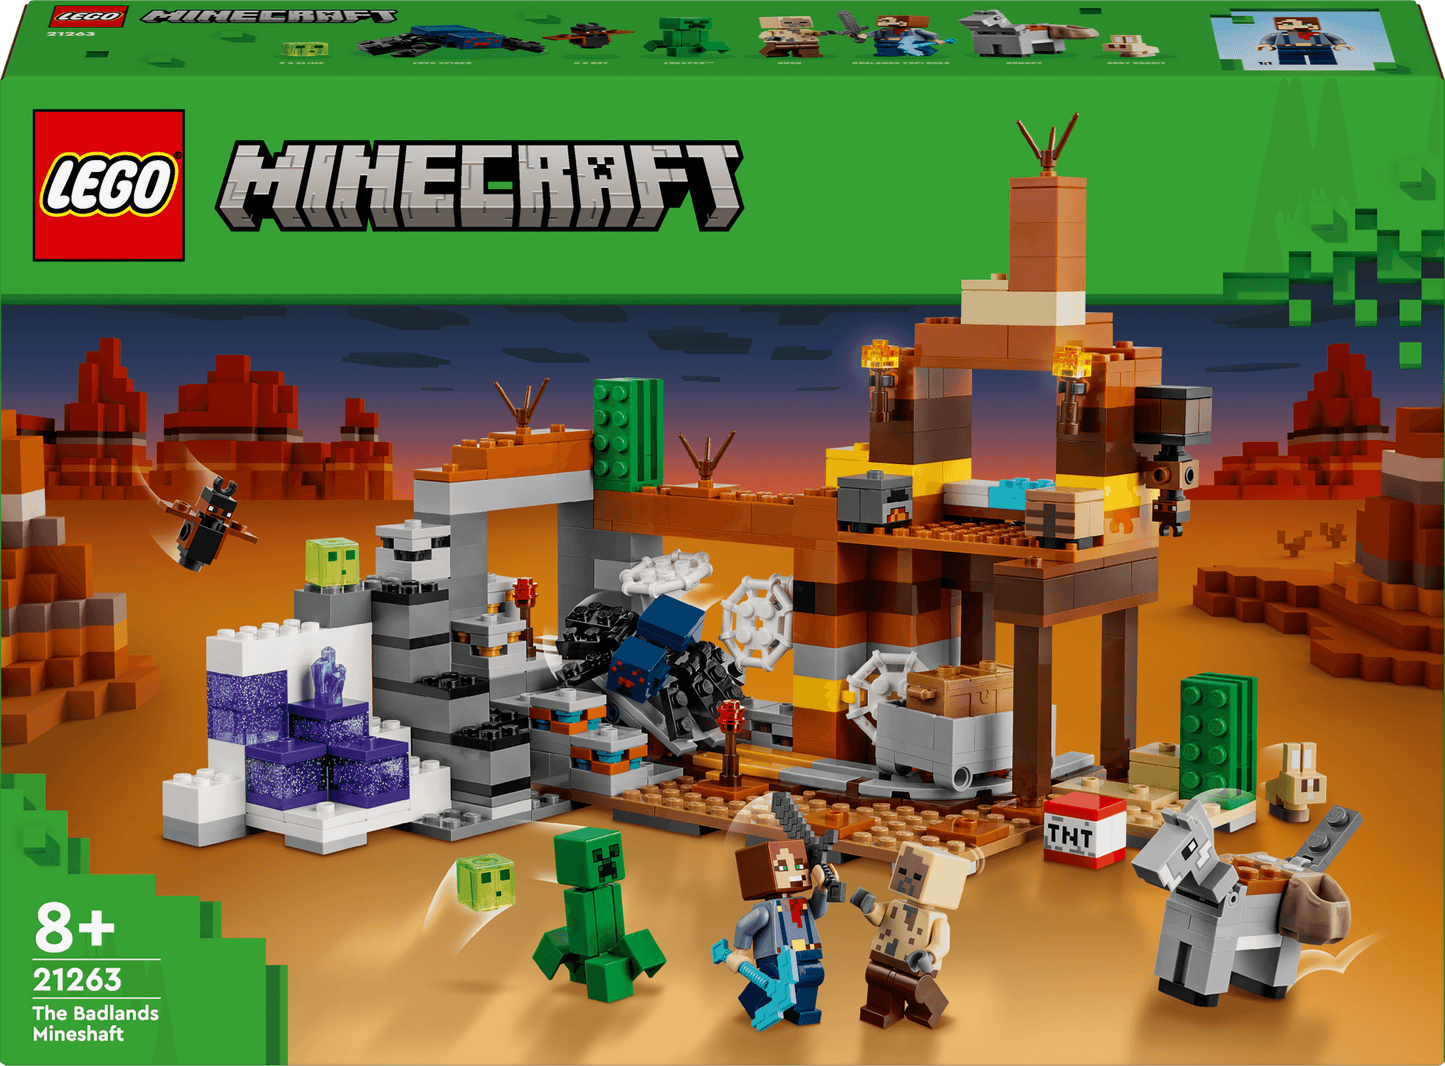 LEGO De woestijn mijnschacht 21263 Mincraft (Pre-Order: verwacht juni) LEGO DUPLO @ 2TTOYS LEGO €. 49.99